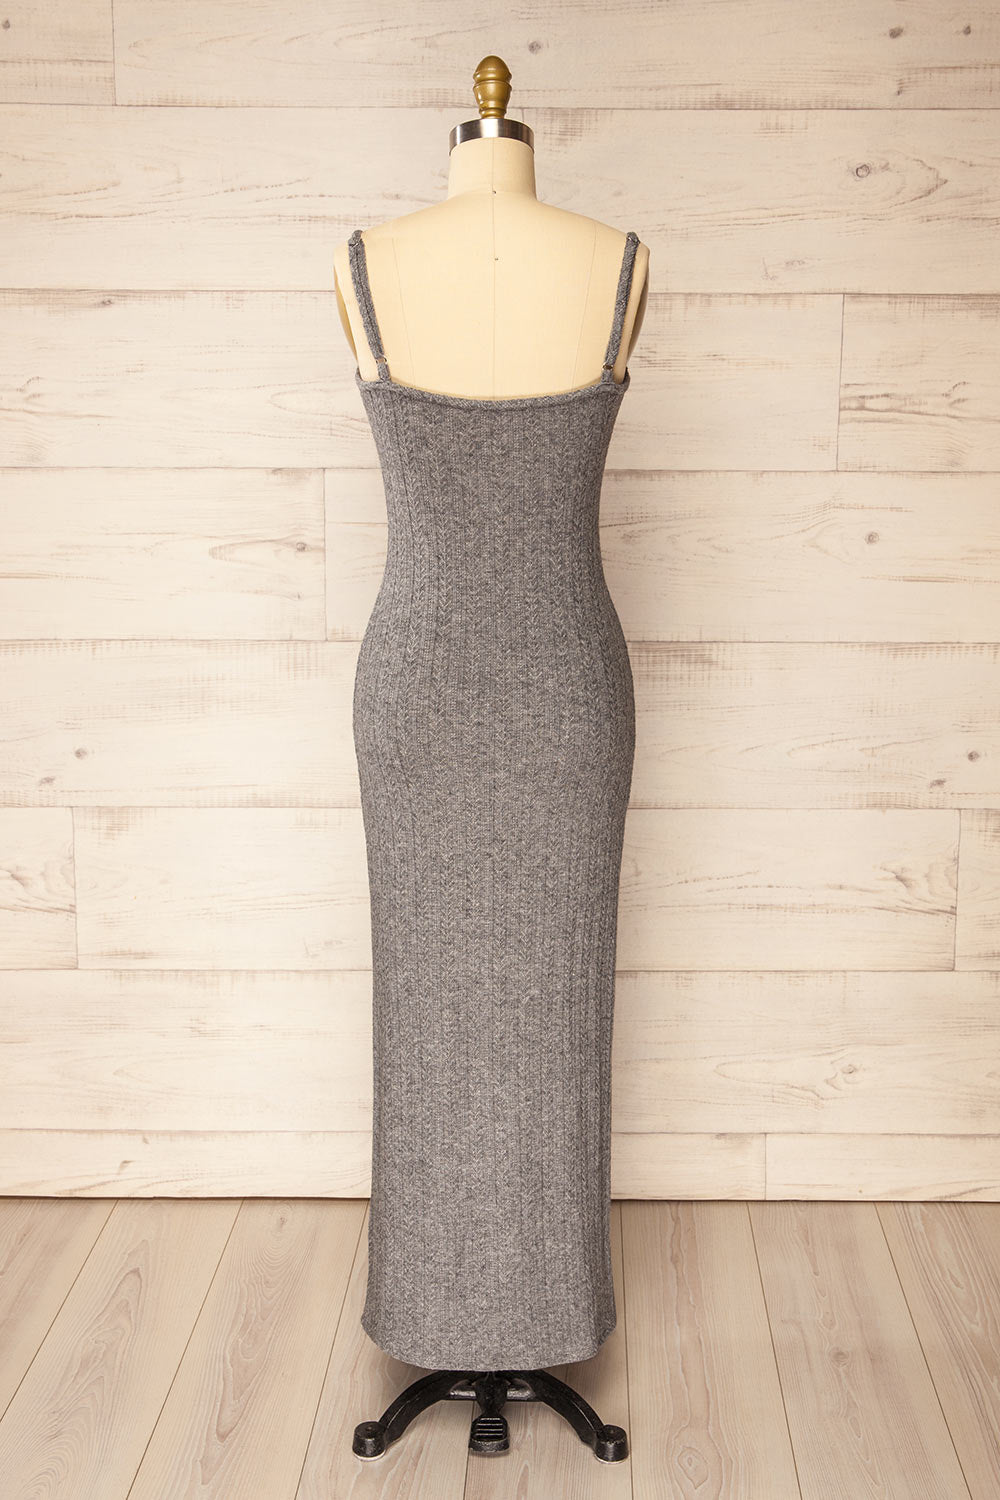 Katherine Grey Knit Maxi Dress w/ Thin Straps | La petite garçonne back view